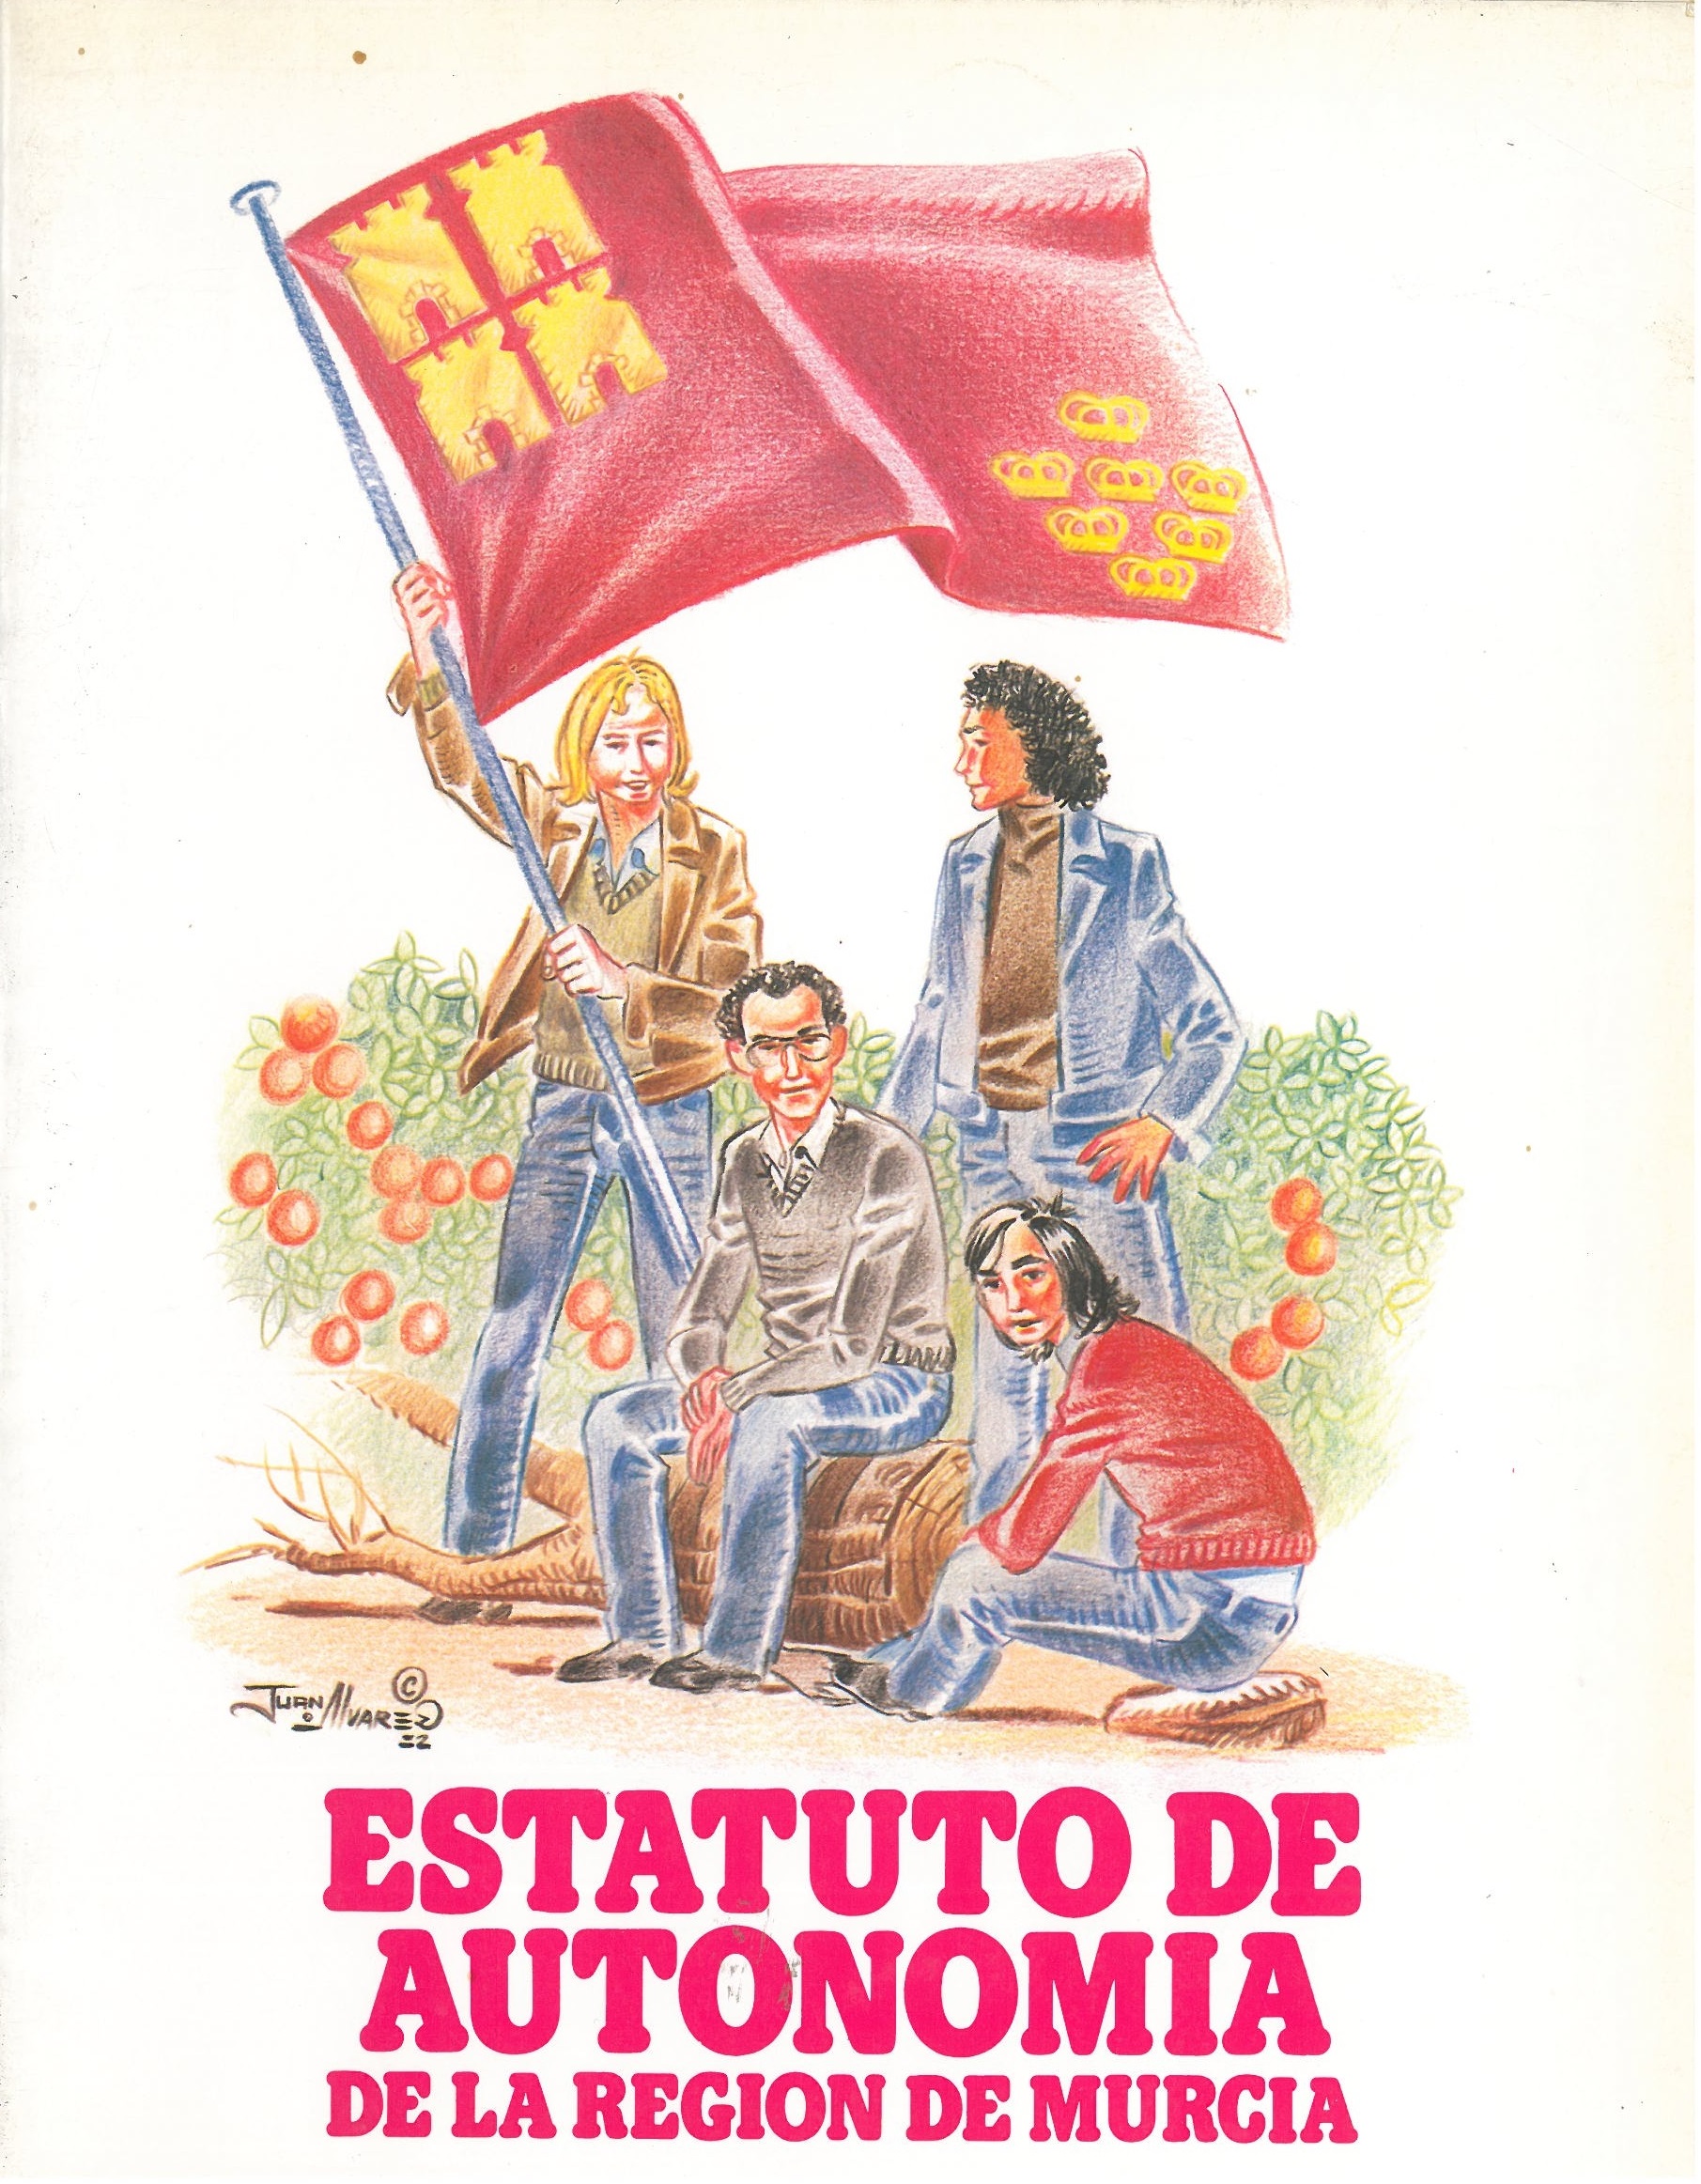 Portada del comic de Juan Álvarez donde varias personas sostienen la bandera de la Región.